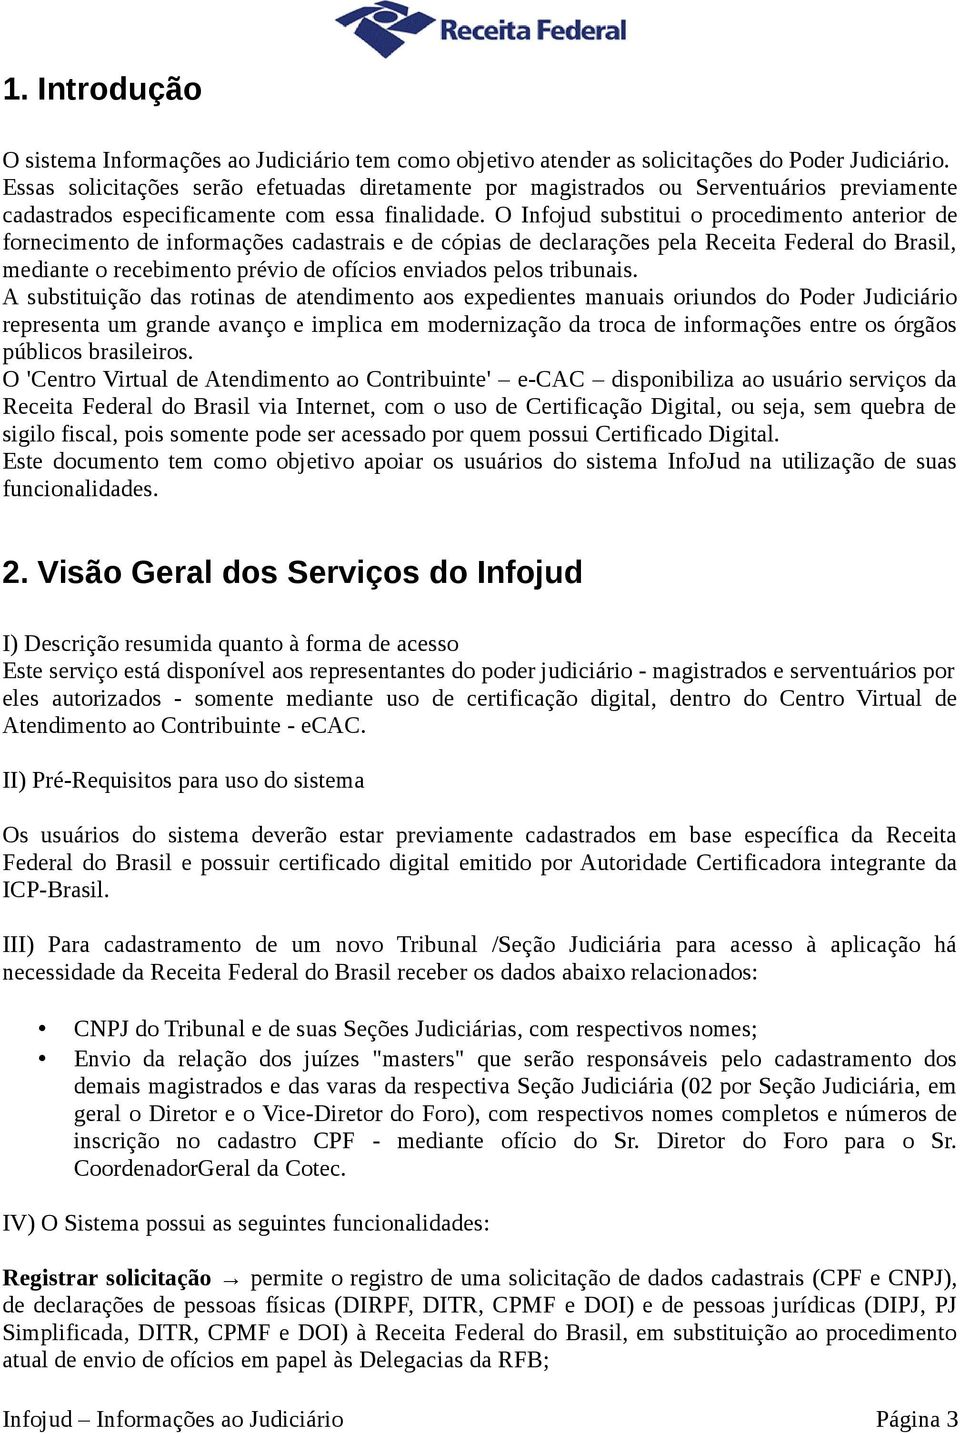 O Infojud substitui o procedimento anterior de fornecimento de informações cadastrais e de cópias de declarações pela Receita Federal do Brasil, mediante o recebimento prévio de ofícios enviados